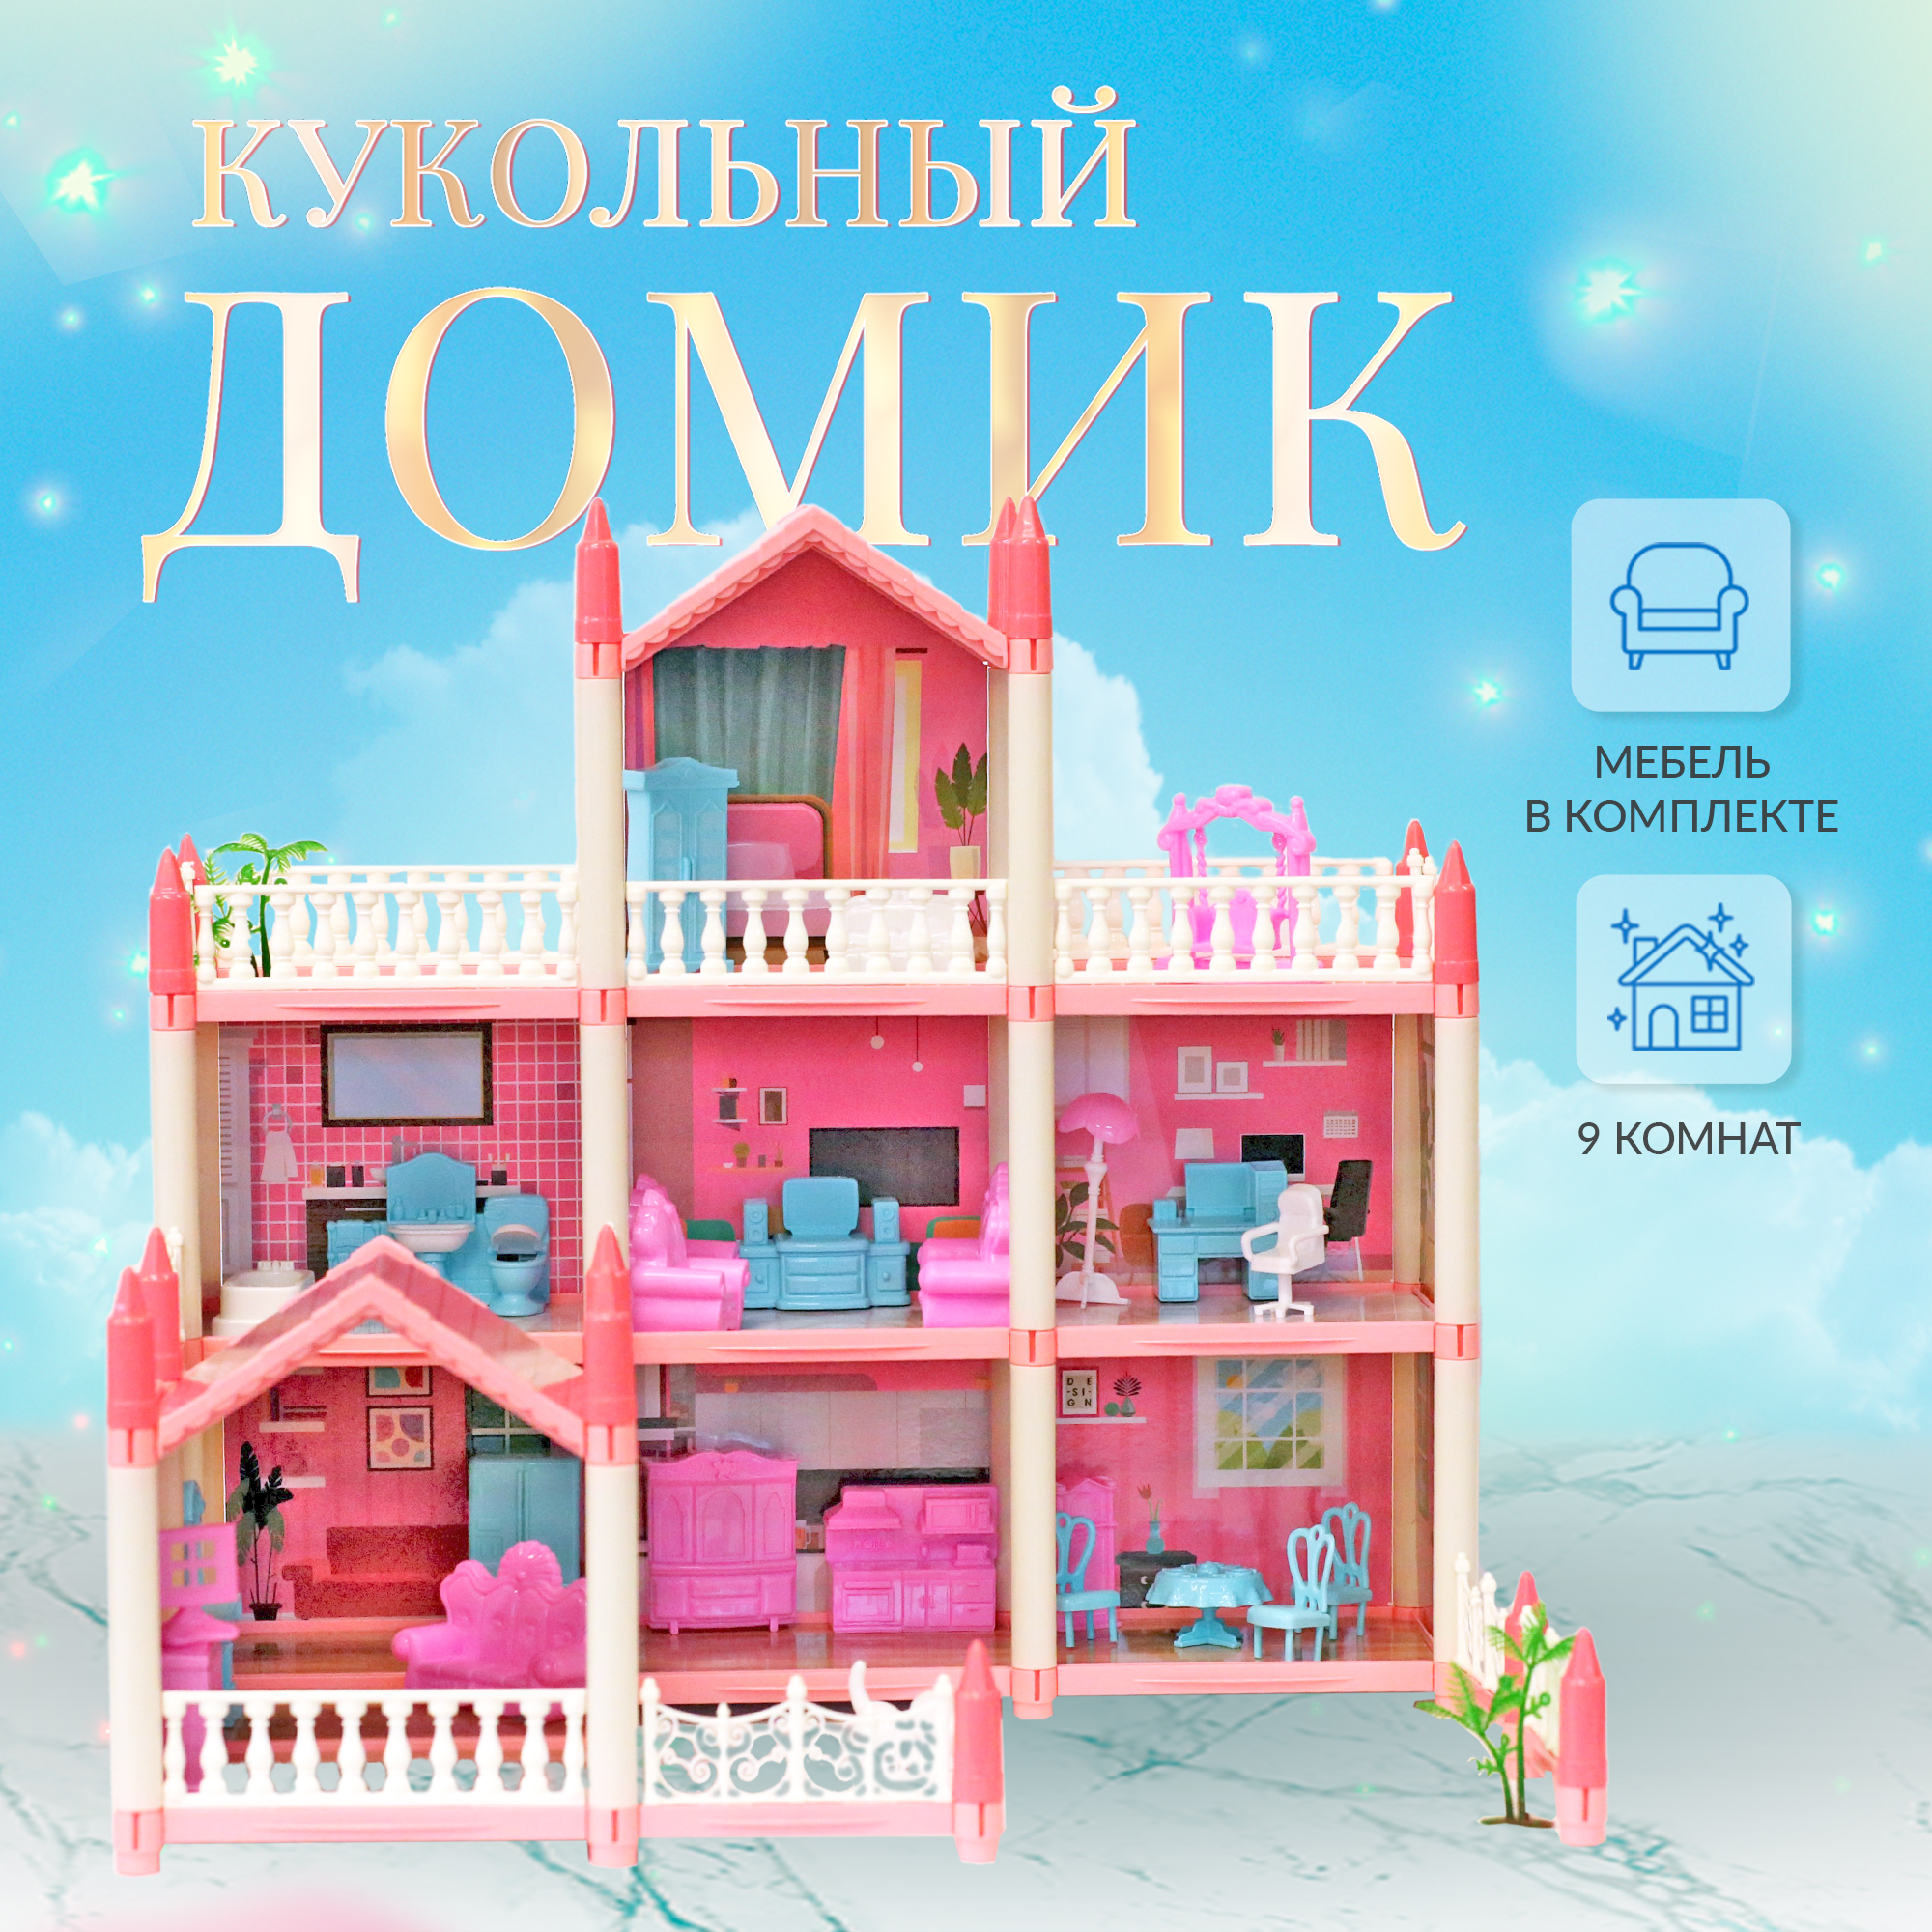 Сборный кукольный домик: 3 этажа, 8 комнат, мебель, аксессуары, кукла, питомец 11500017 sharktoys сборный кукольный домик snow princess